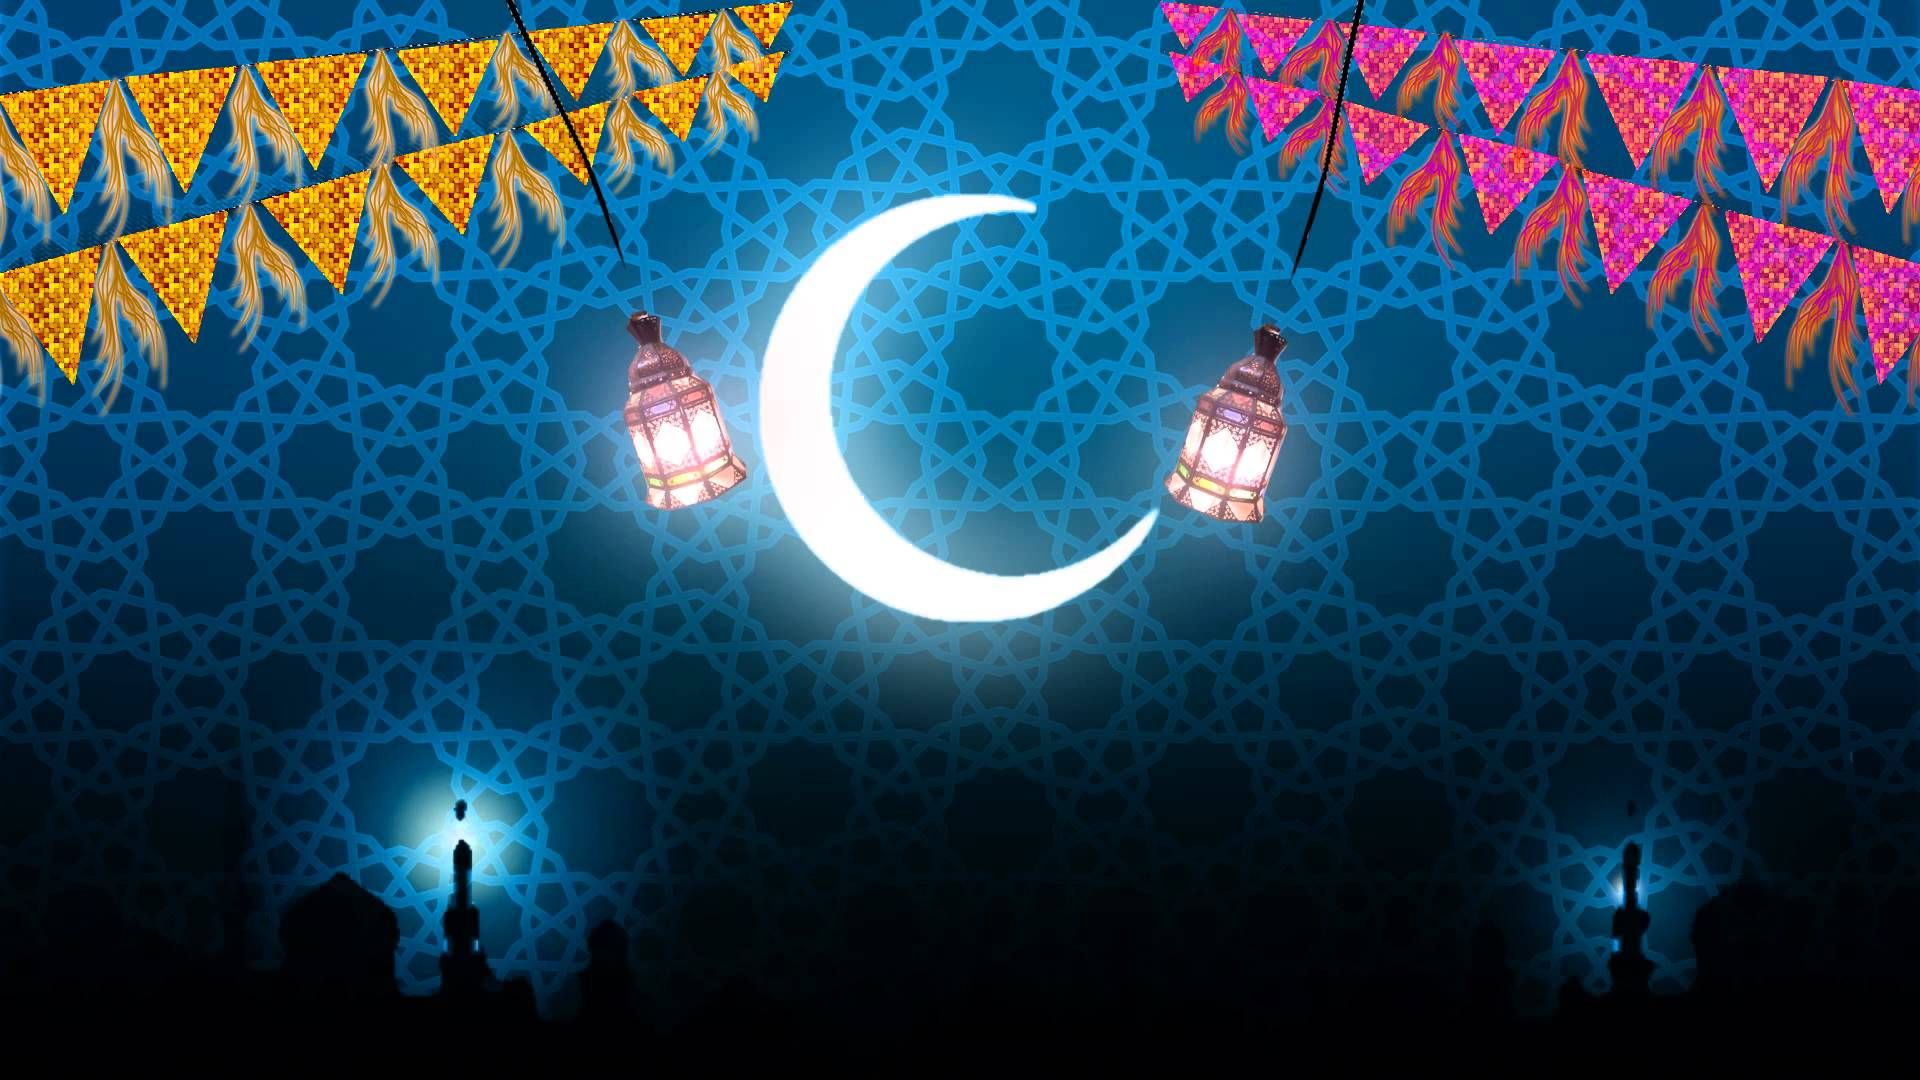 رسائل تهنئة رمضان المبارك 2021-1442 وأجمل الصور والخلفيات الرمضانية الجديدة